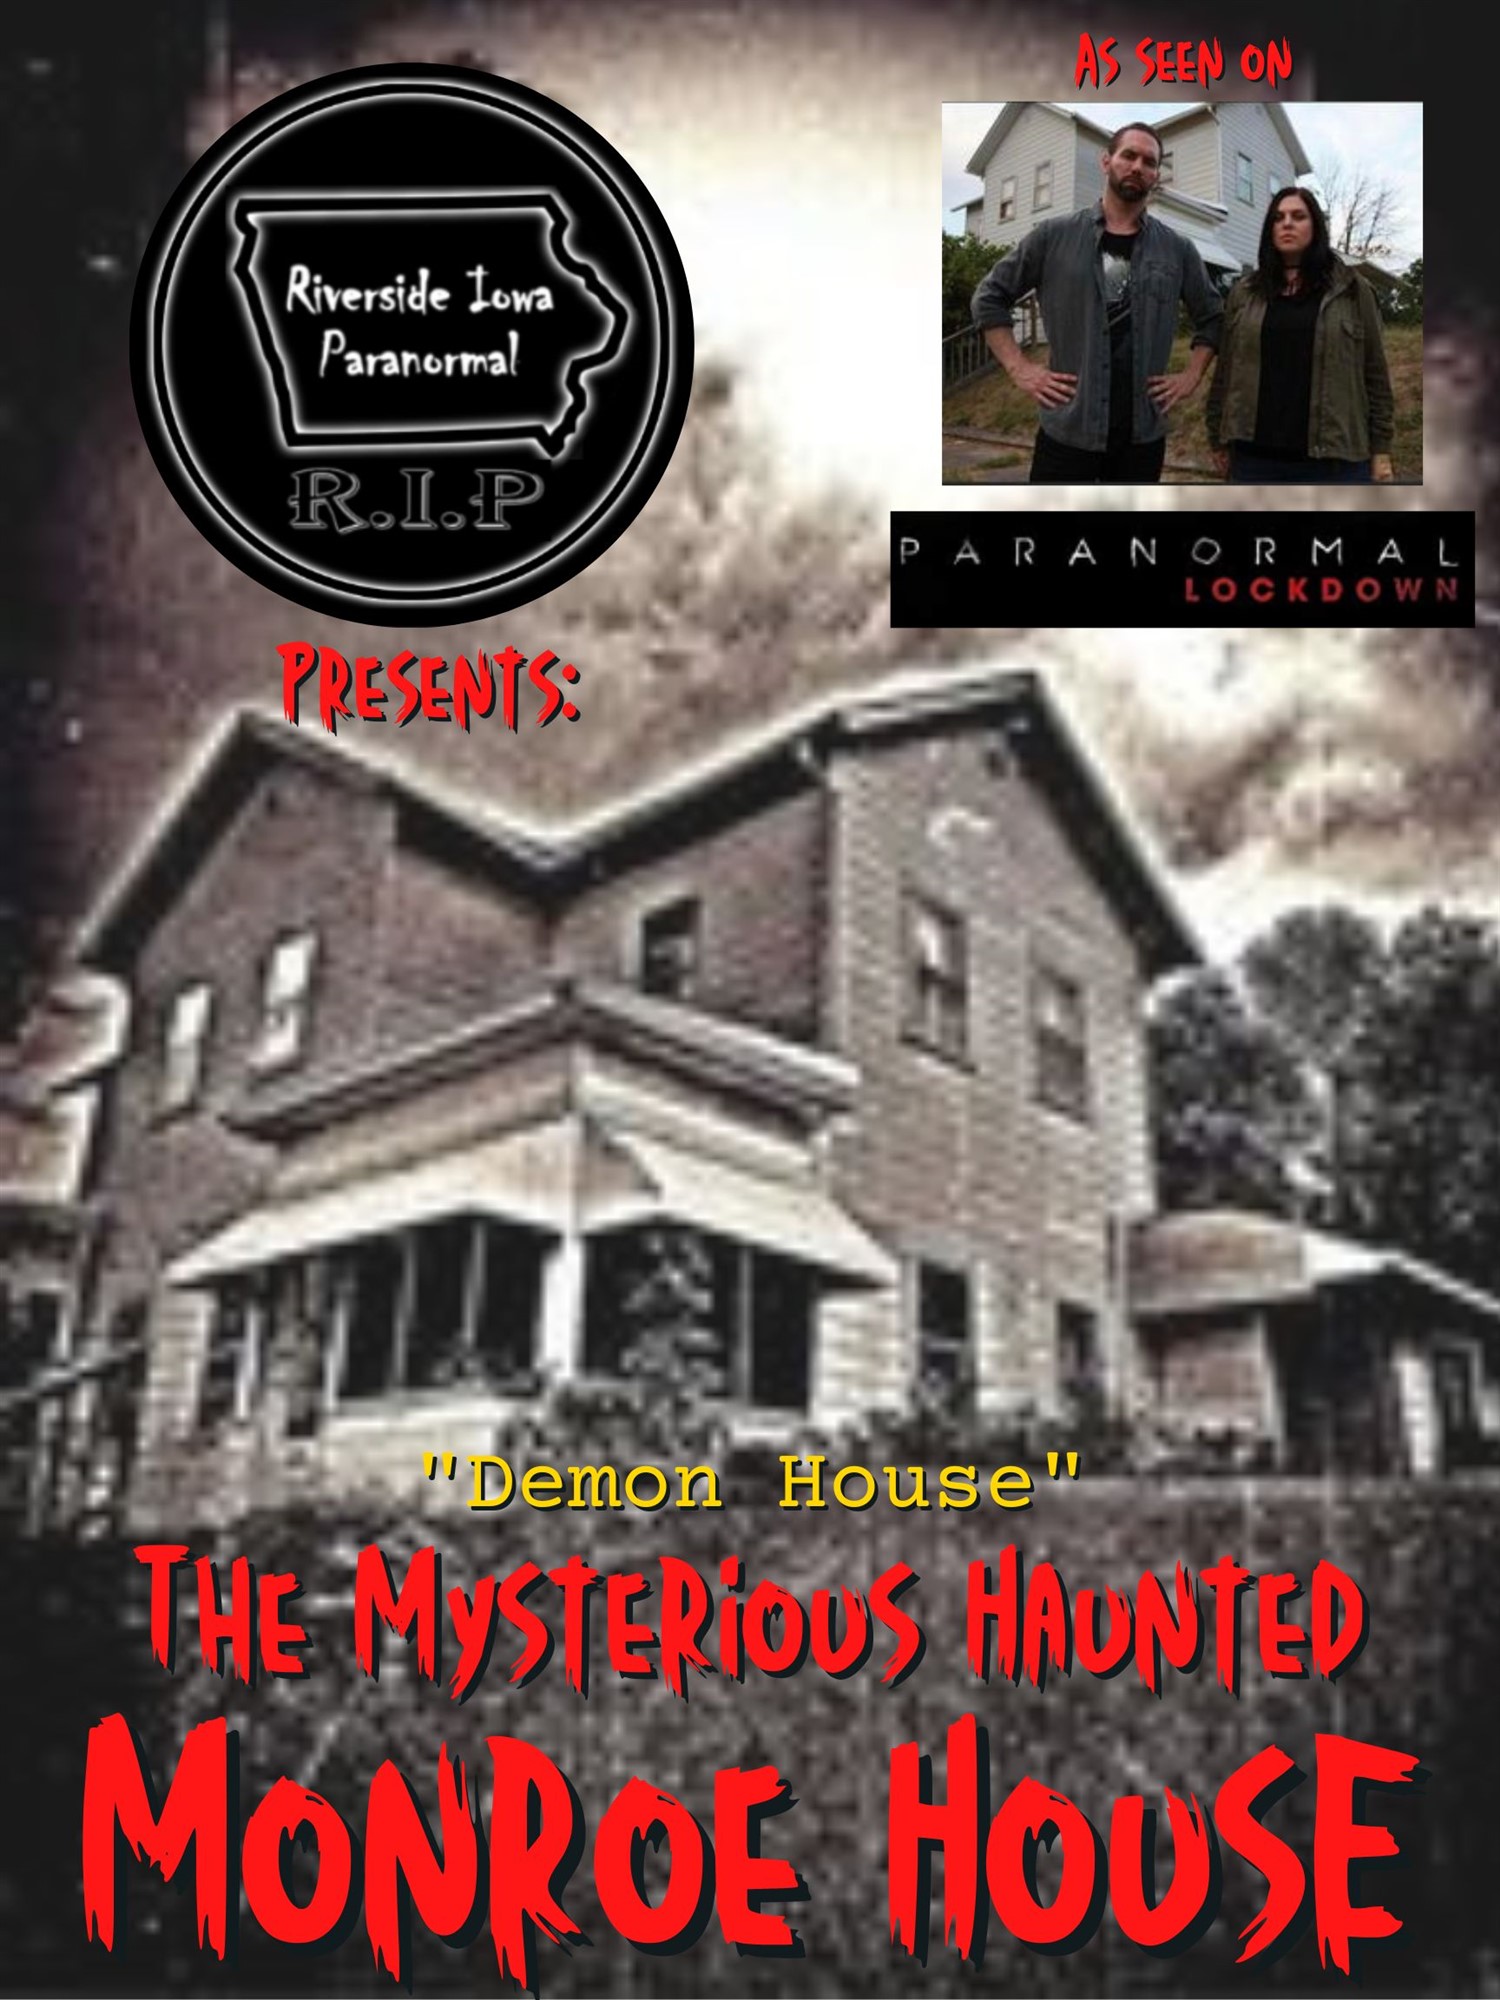 Mysterious Haunted Monroe House  on mar. 04, 20:00@Mysterious Monroe House - Compra entradas y obtén información enThriller Events thriller.events